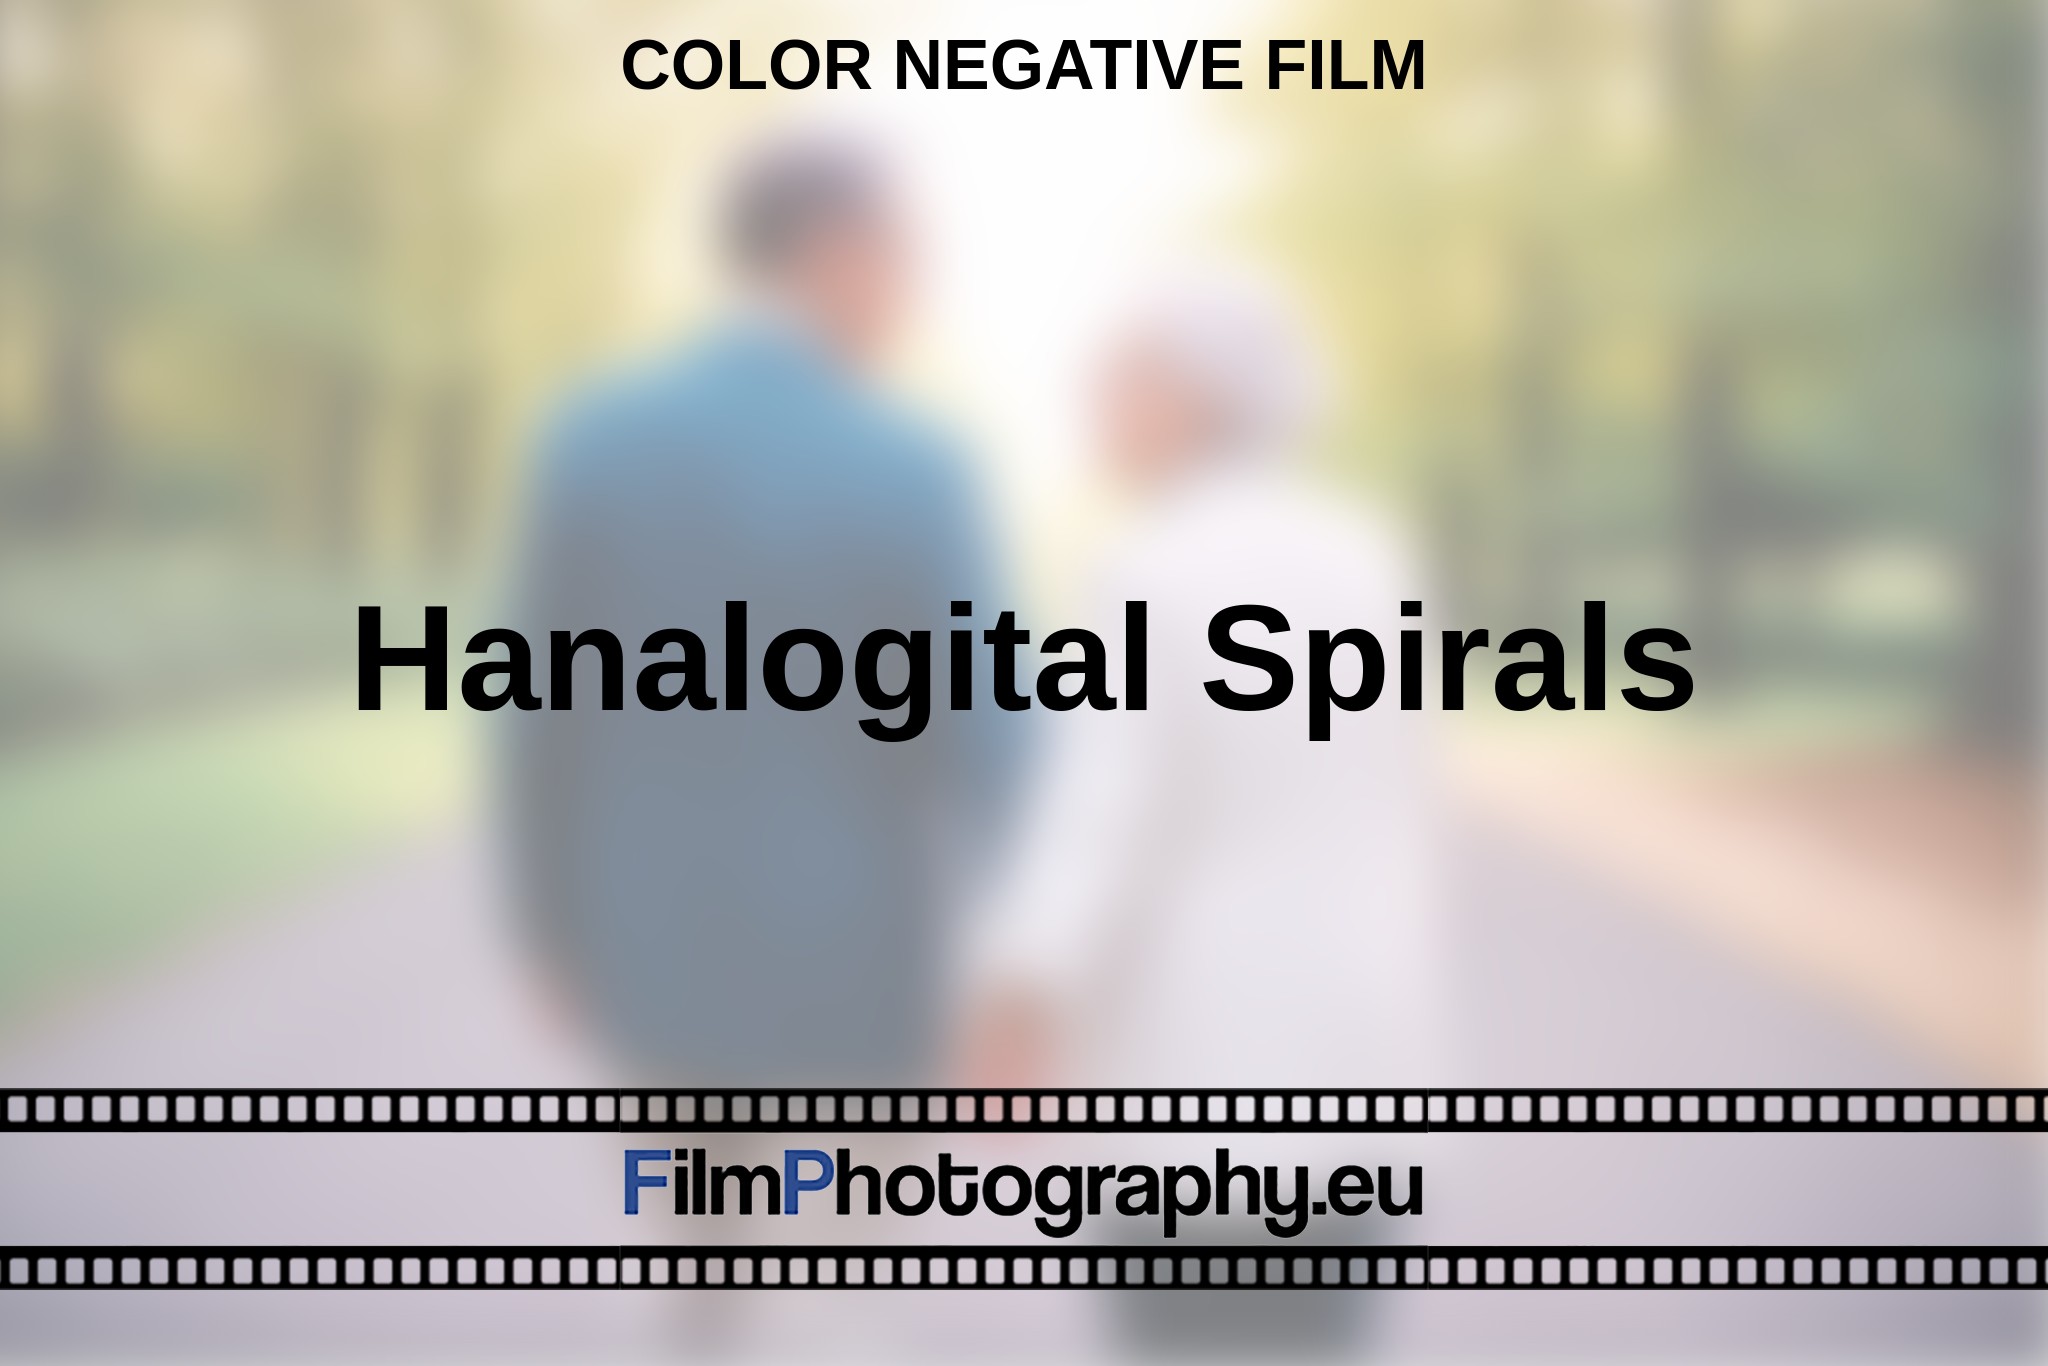 hanalogital-spirals-color-negative-film-en-bnv.jpg